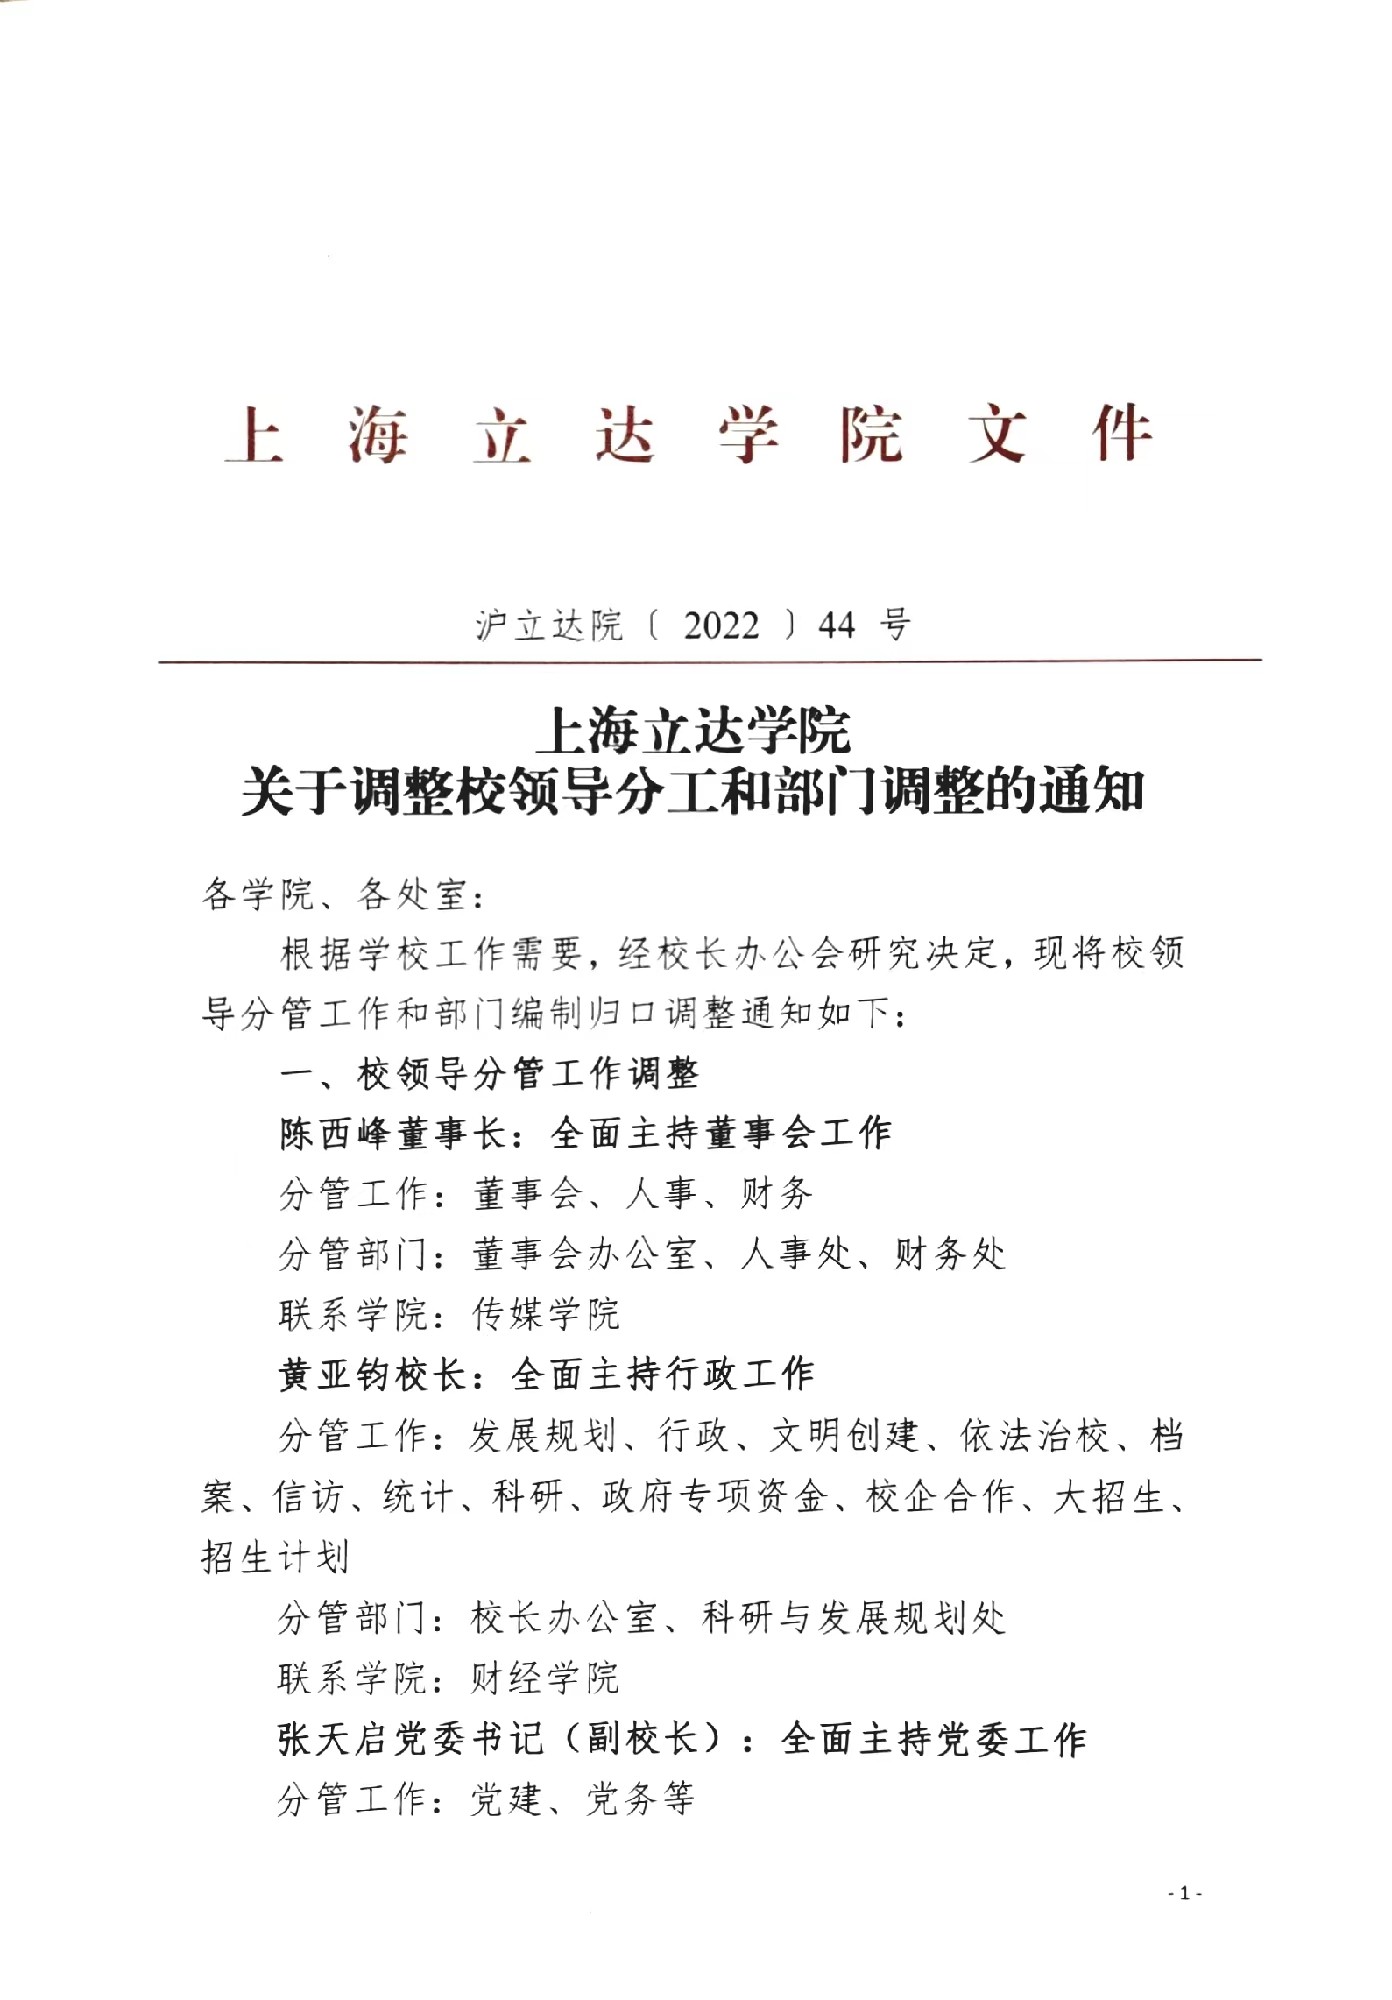 上海立达学院关于校领导分工的通知